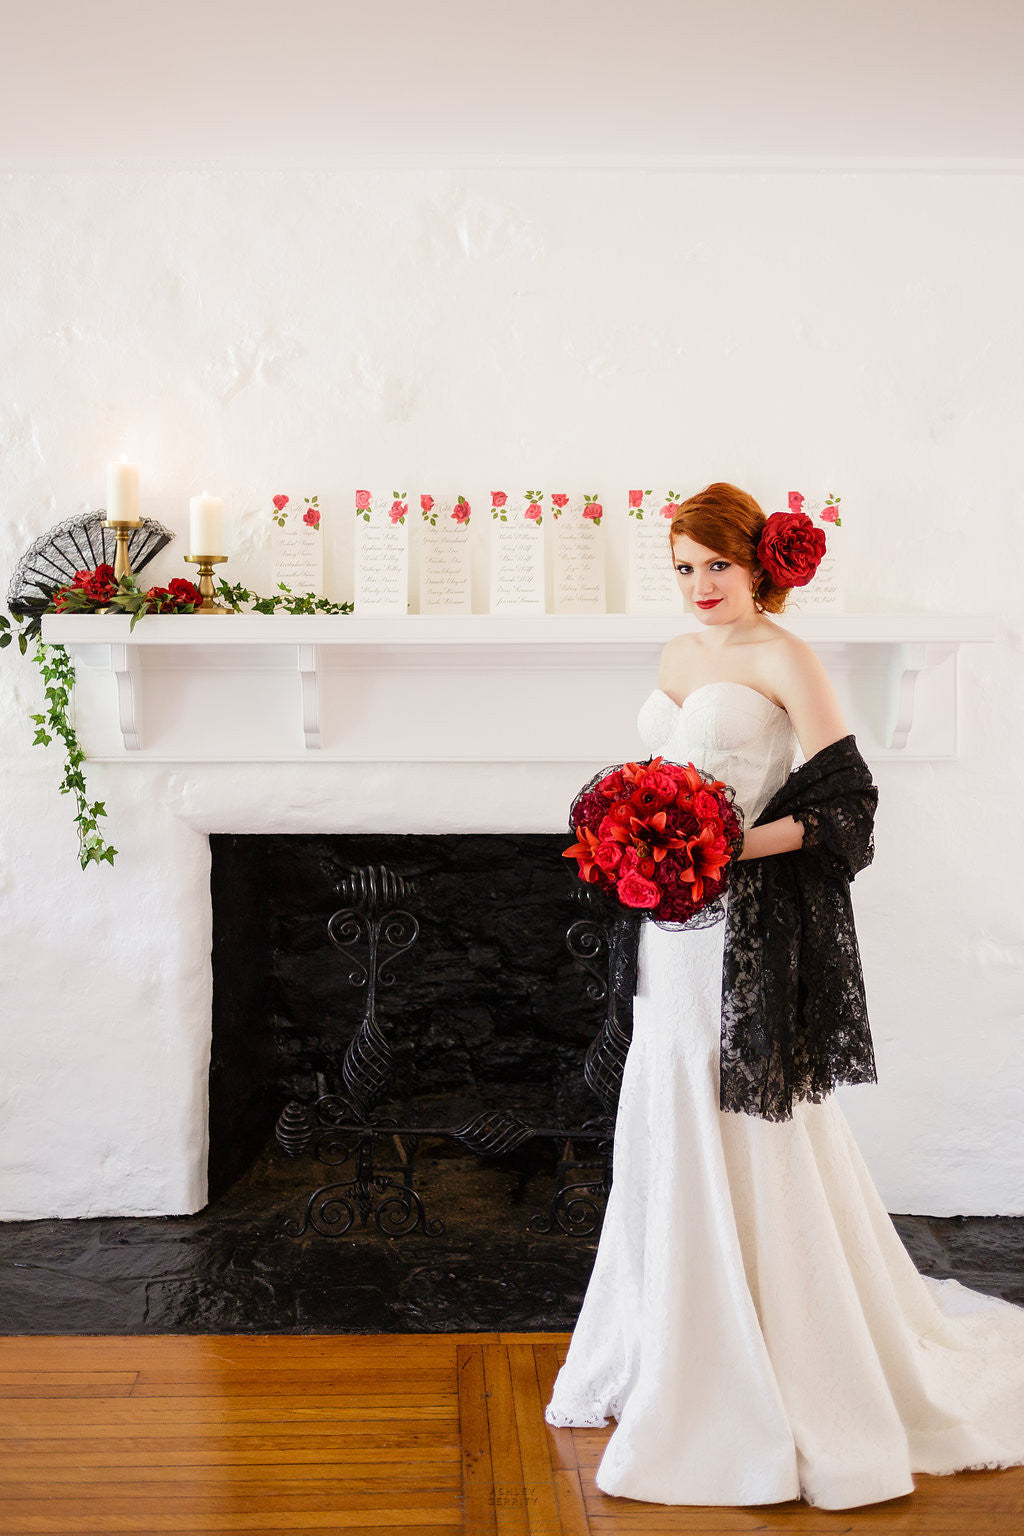 Spanish Rose Inspired Shoot at Bolingbroke Mansion – Tallulah Ketubahs